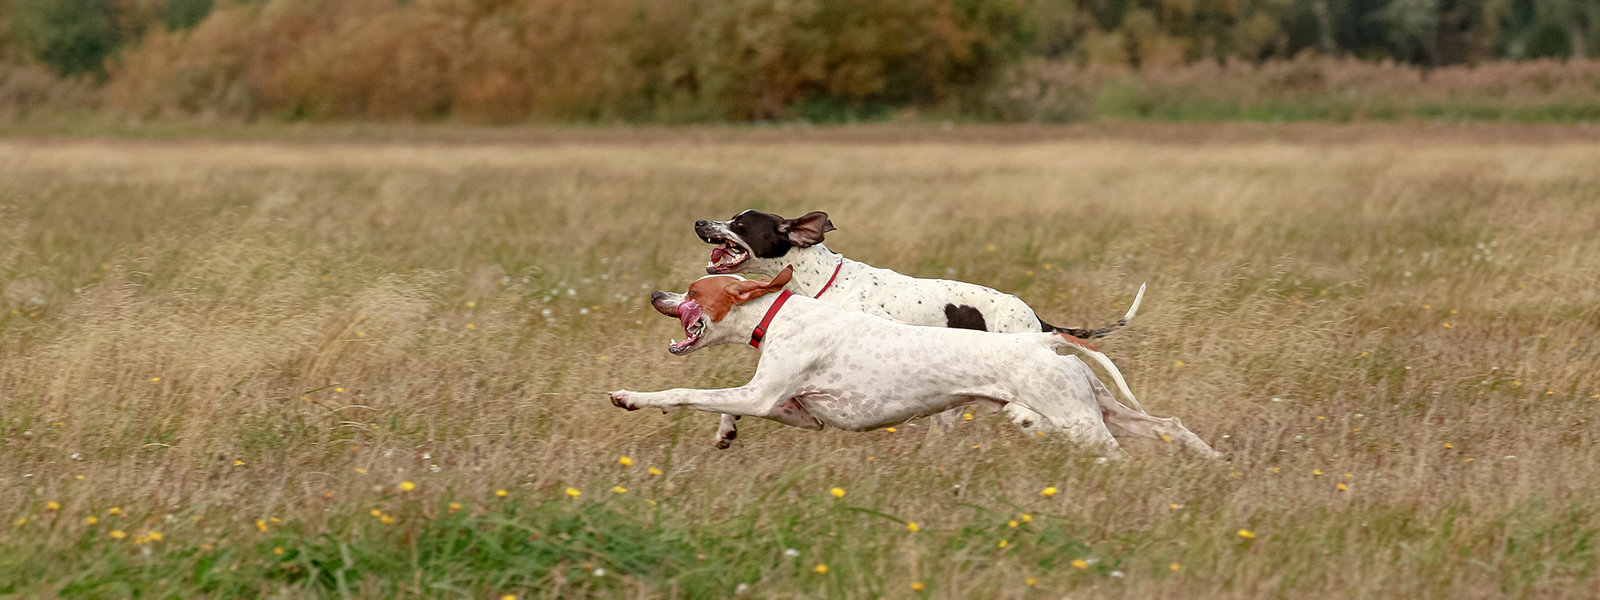 Das Bild zeigt 2 Pointer im schnellen Lauf nebeneinander bei der Feldarbeit. Der Pointer ist ein höchst passionierter Jagdhund und wird es auch immer sein!